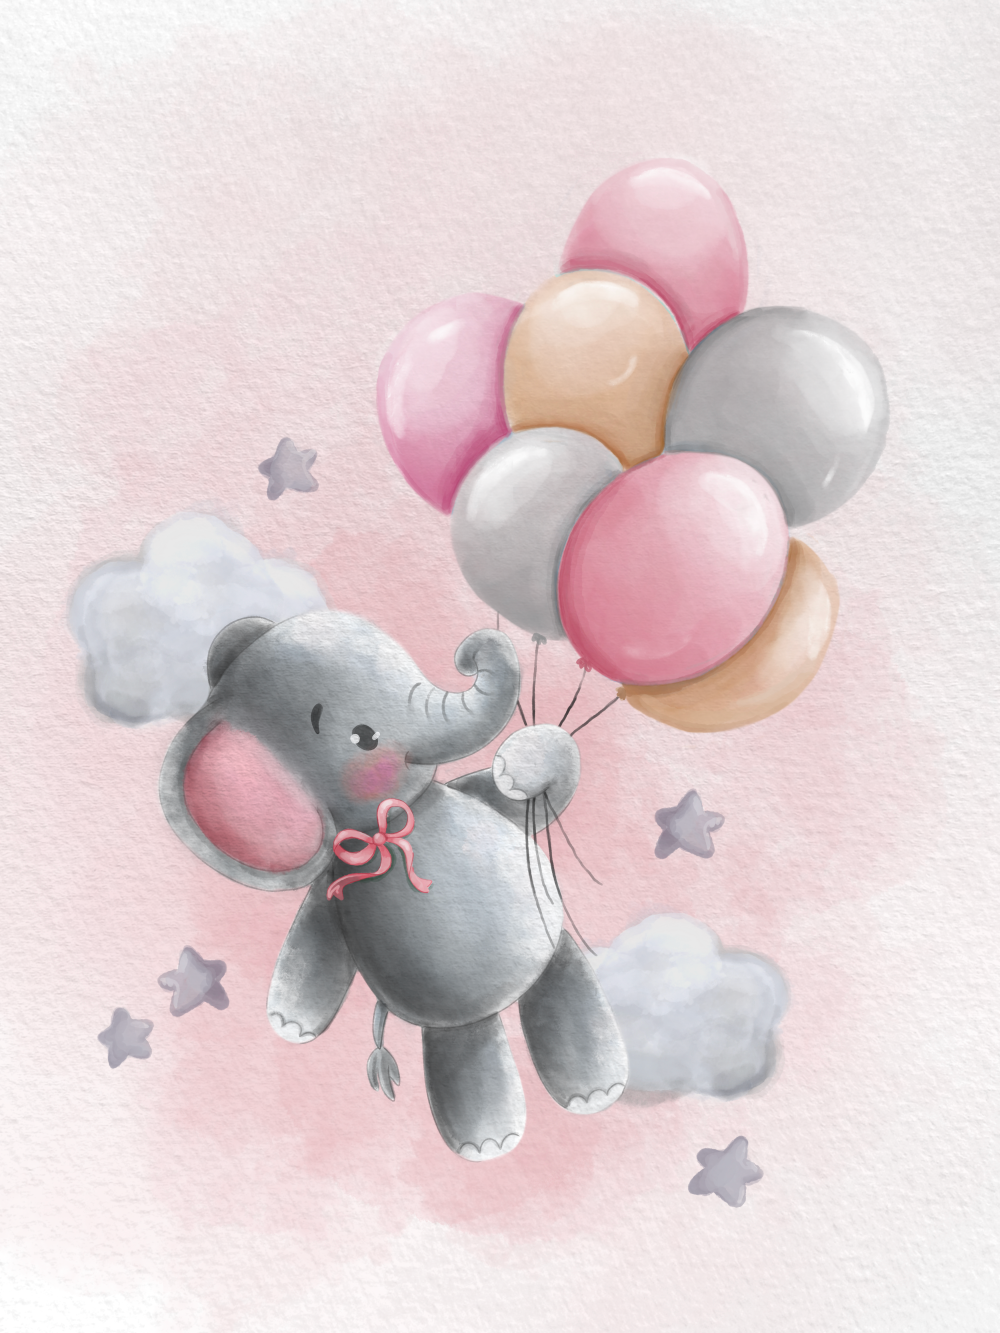 Obraz nebo plakát slon s růžovými balónky a mašlí a pozadím jako dárek do dětského pokoje nebo pro narození dítěte | ZivotniOkamziky.cz